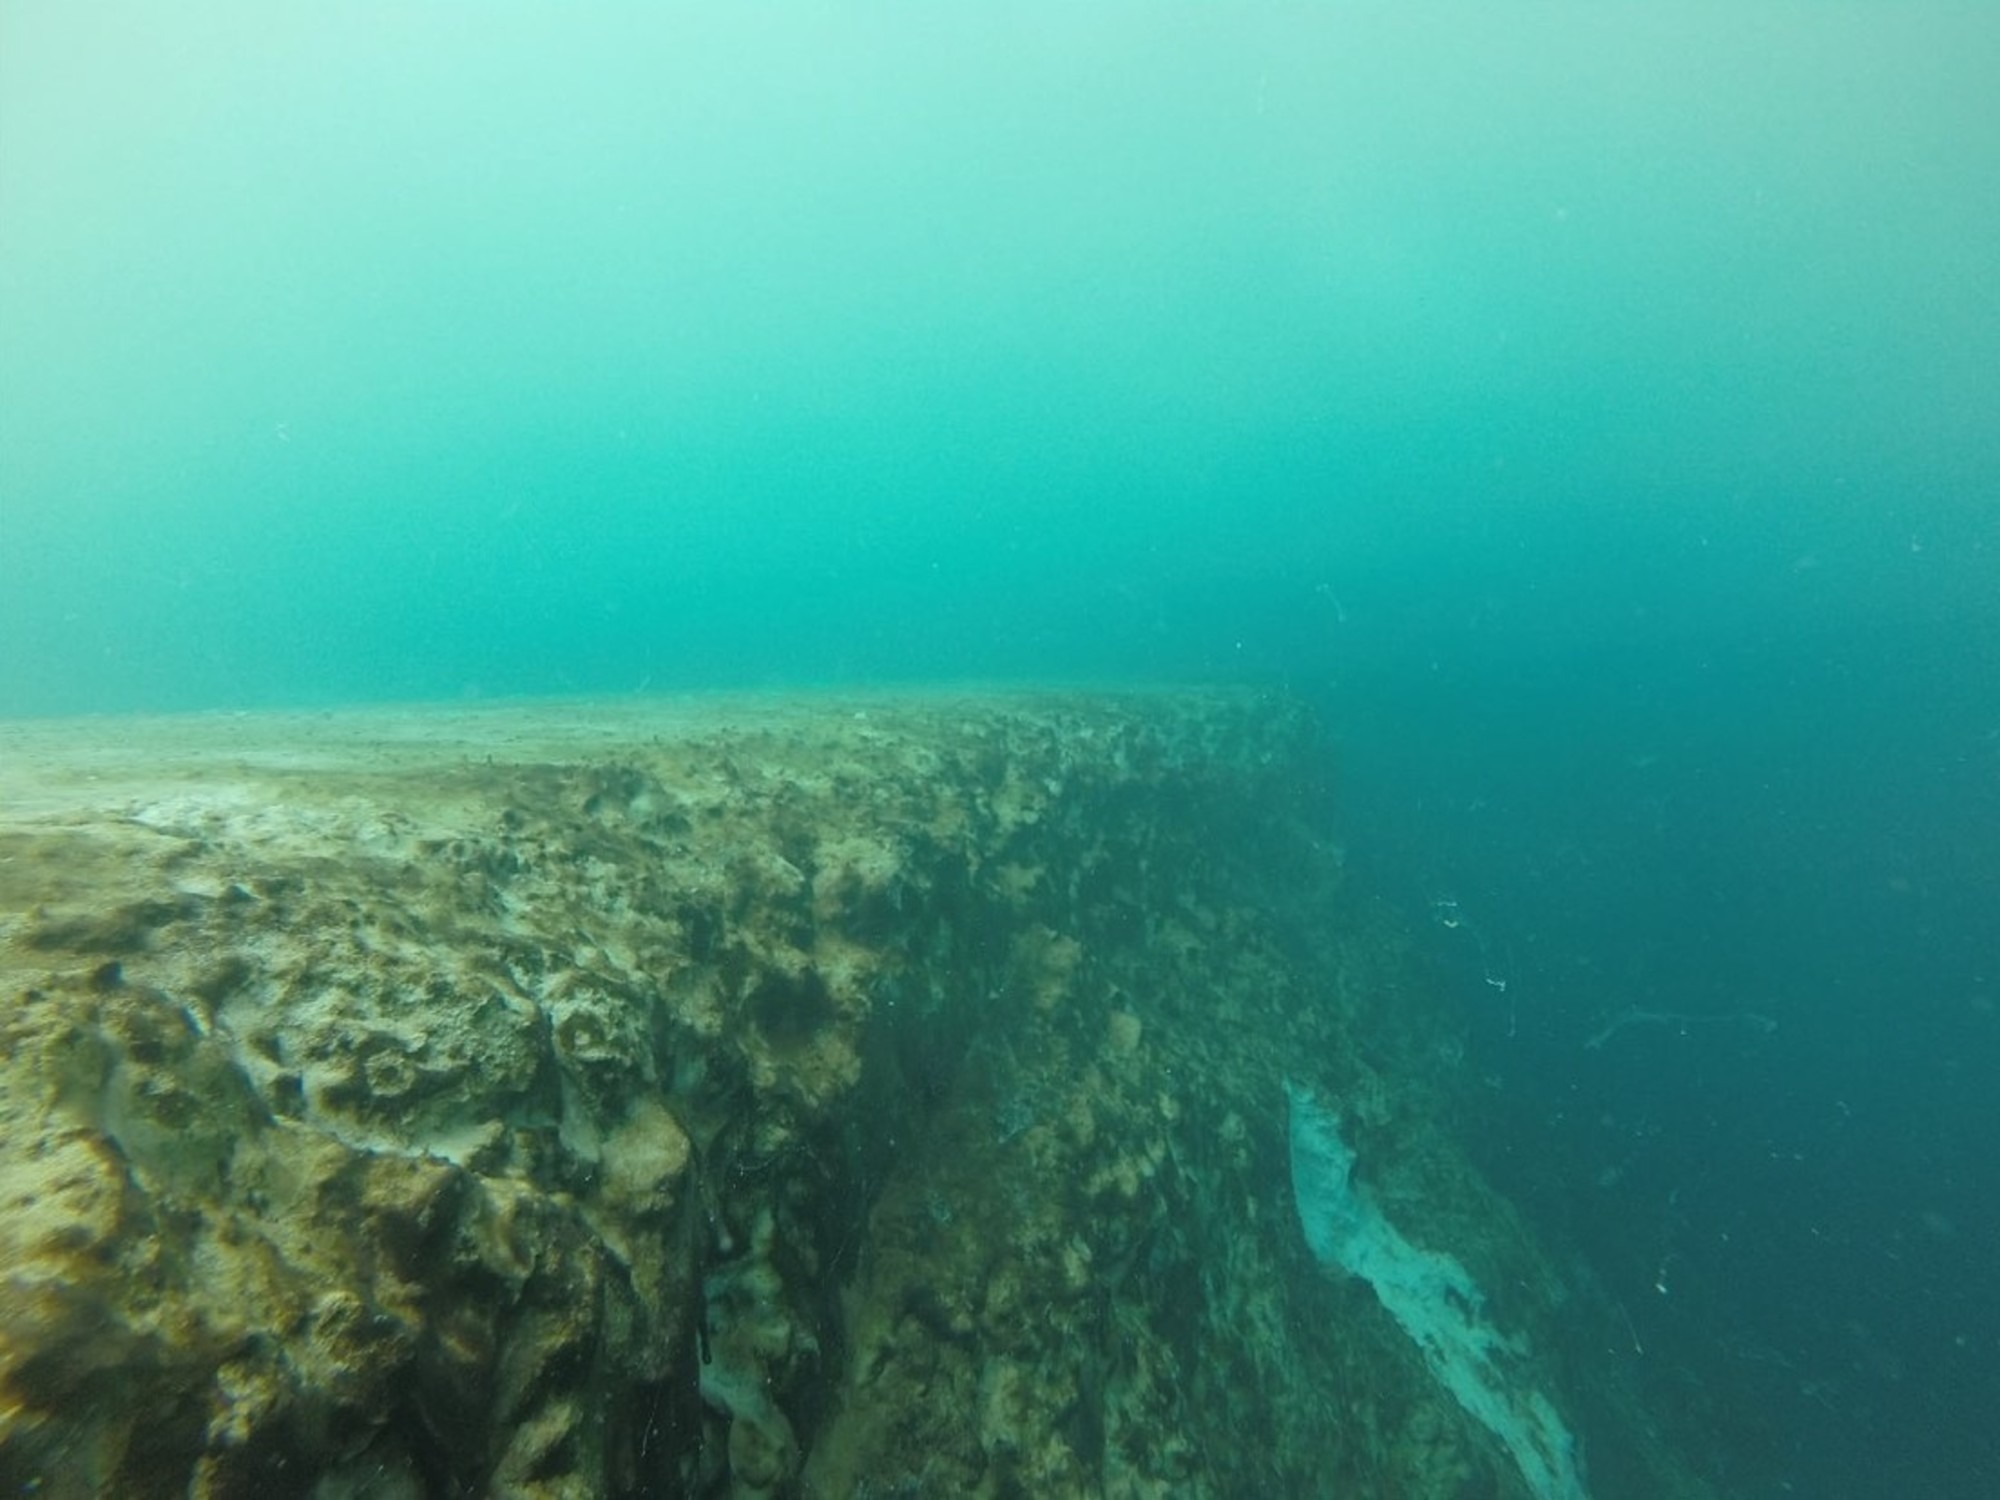 Encontraron un enorme agujero en el fondo del océano y los científicos no saben donde termina (VIDEO)